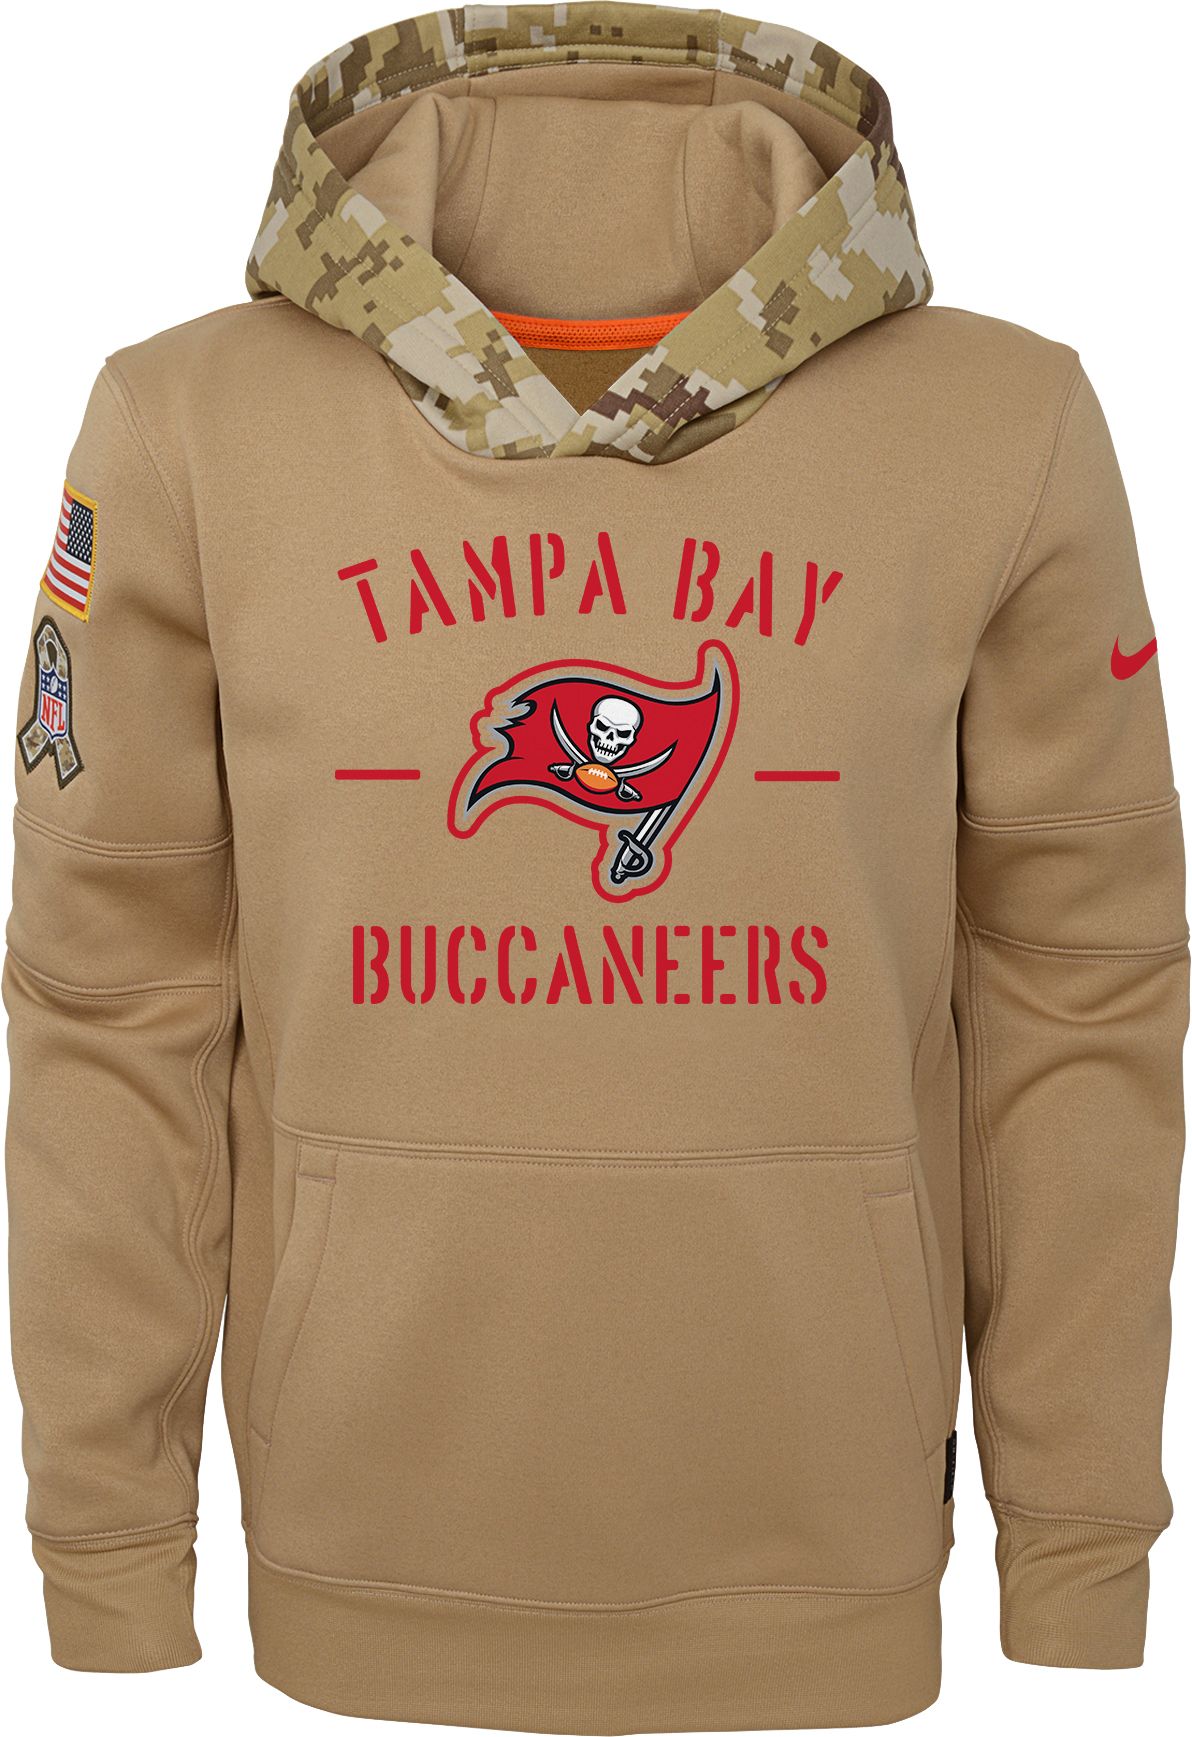 salute to service buccaneers hoodie